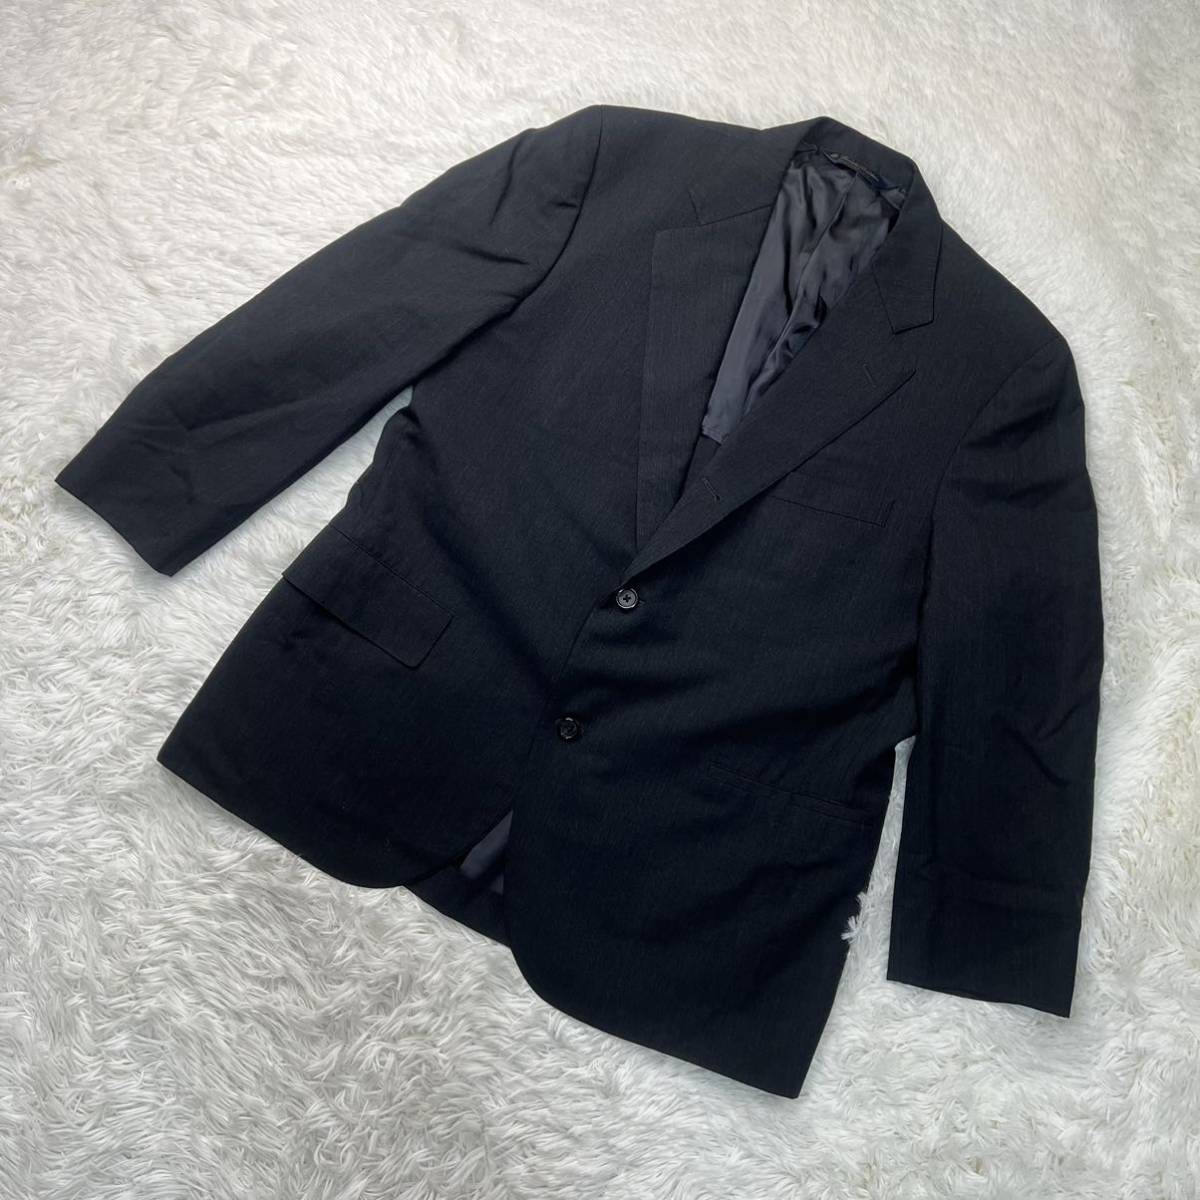 Brooks Brothers ブルックス ブラザーズ セットアップ ブラック スーツ サイズ 42SHT 36W_画像2